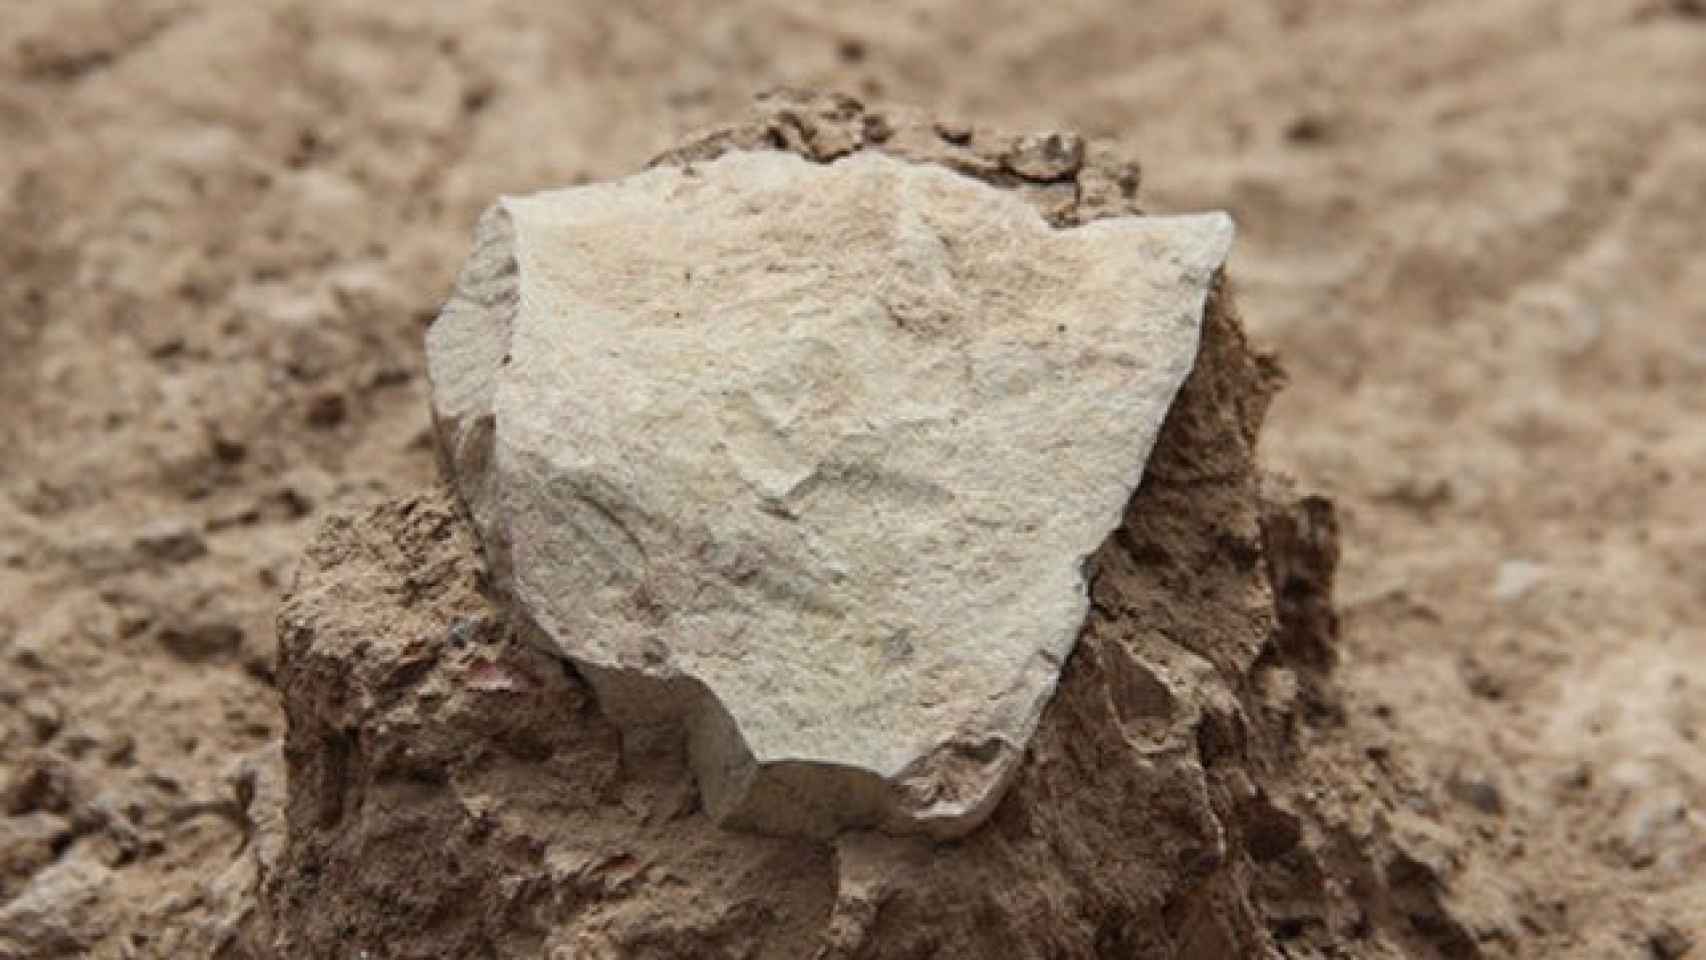 Una de la herramientas de piedra halladas en el yacimiento de Kenia.